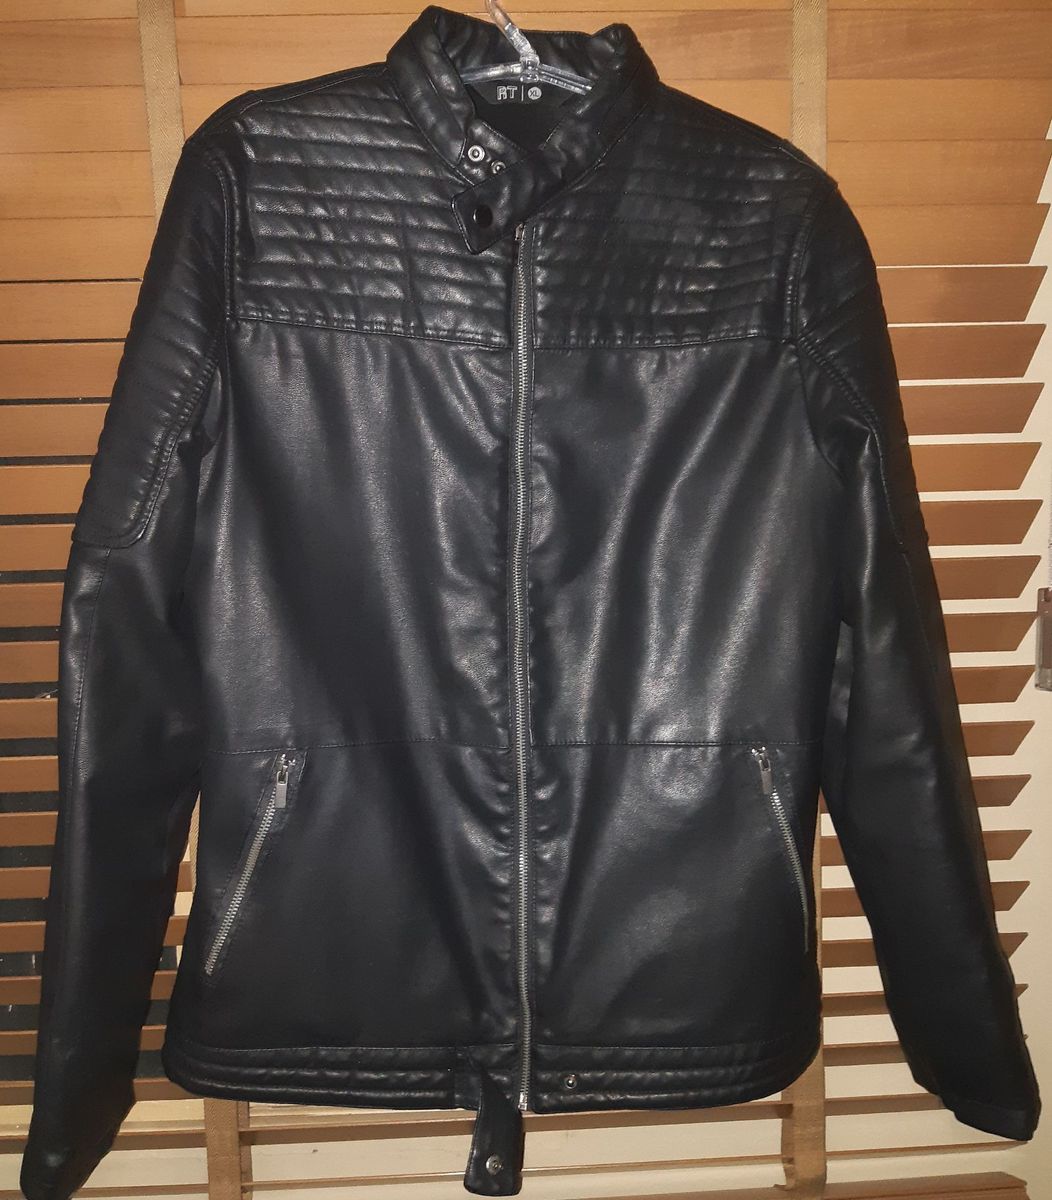 jaqueta de couro masculina tng preço